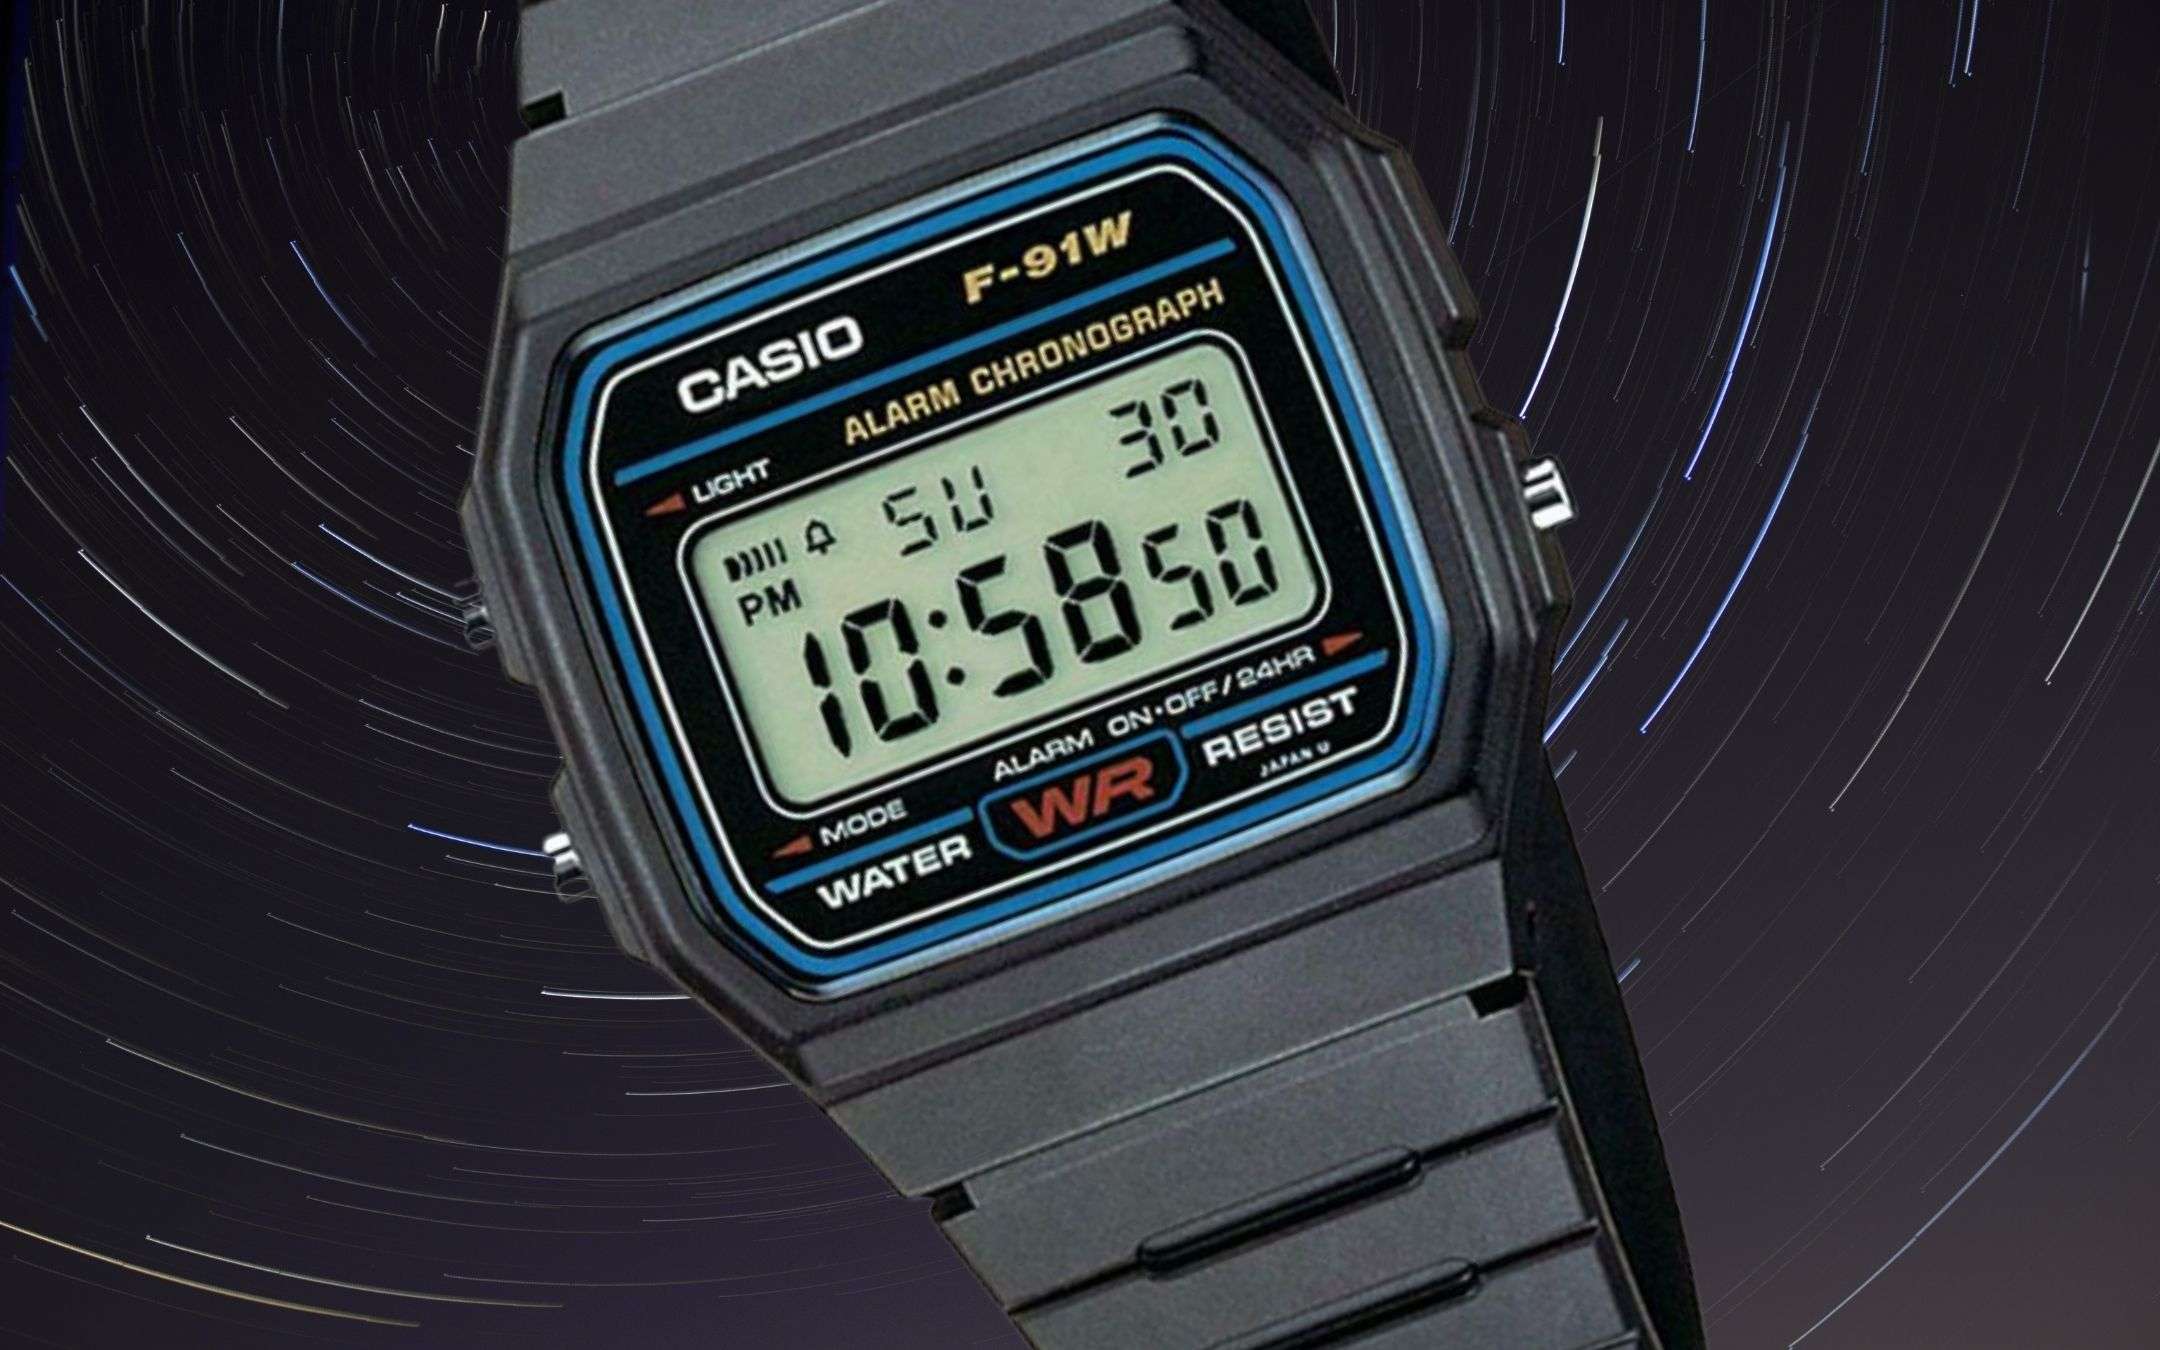 L'intramontabile orologio CASIO F-91W a soli 20€ su eBay!